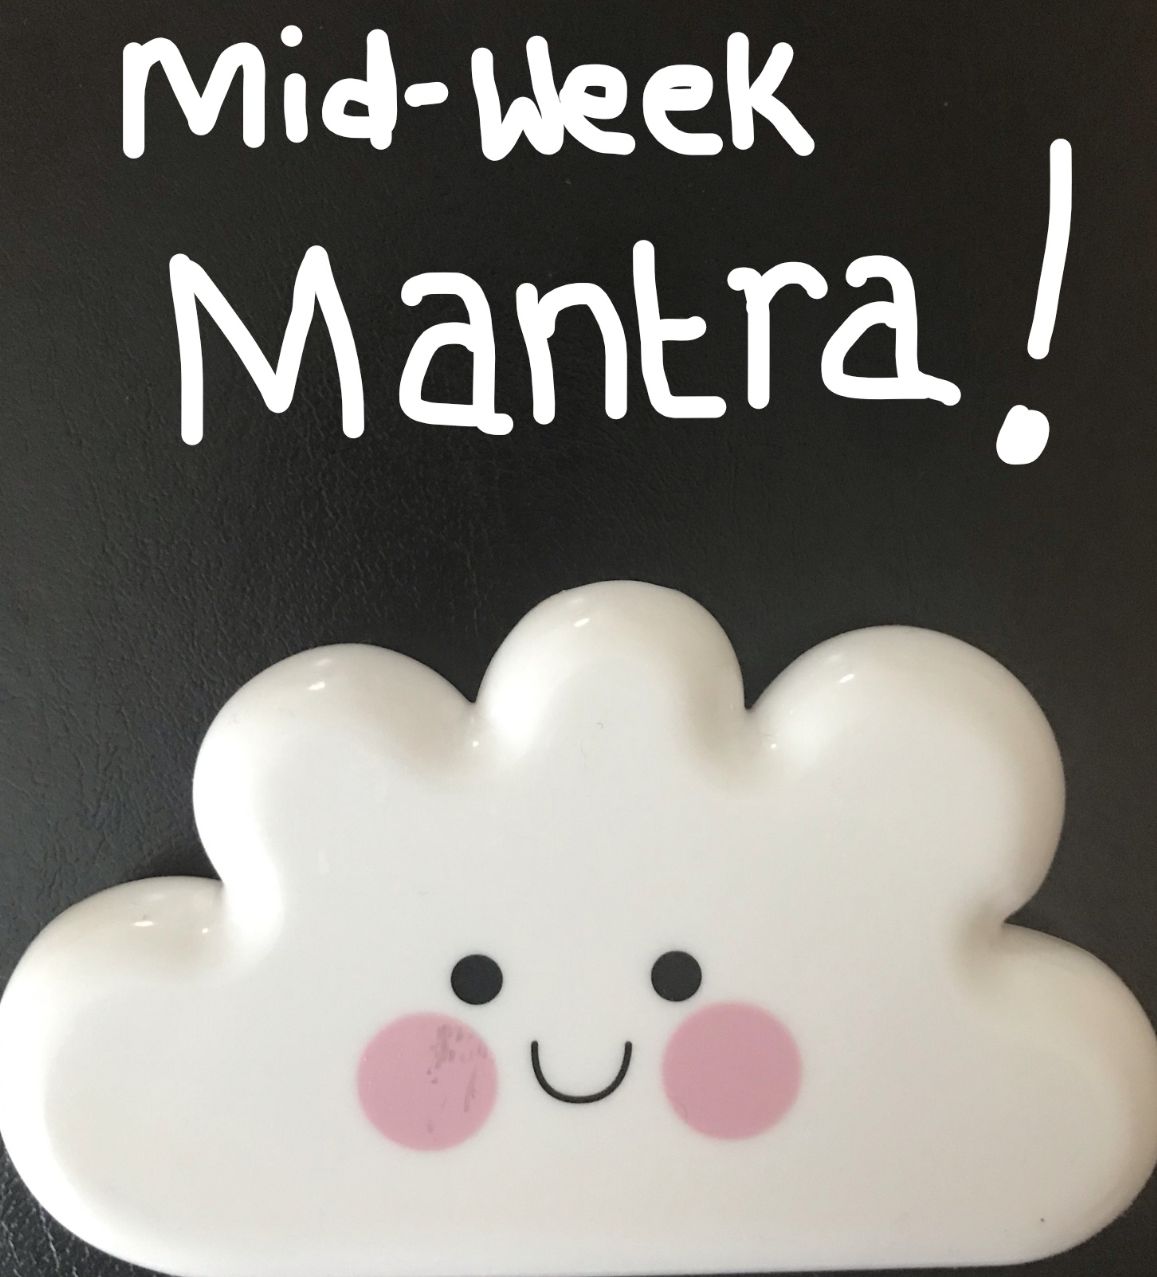 Mid-Week Mantra